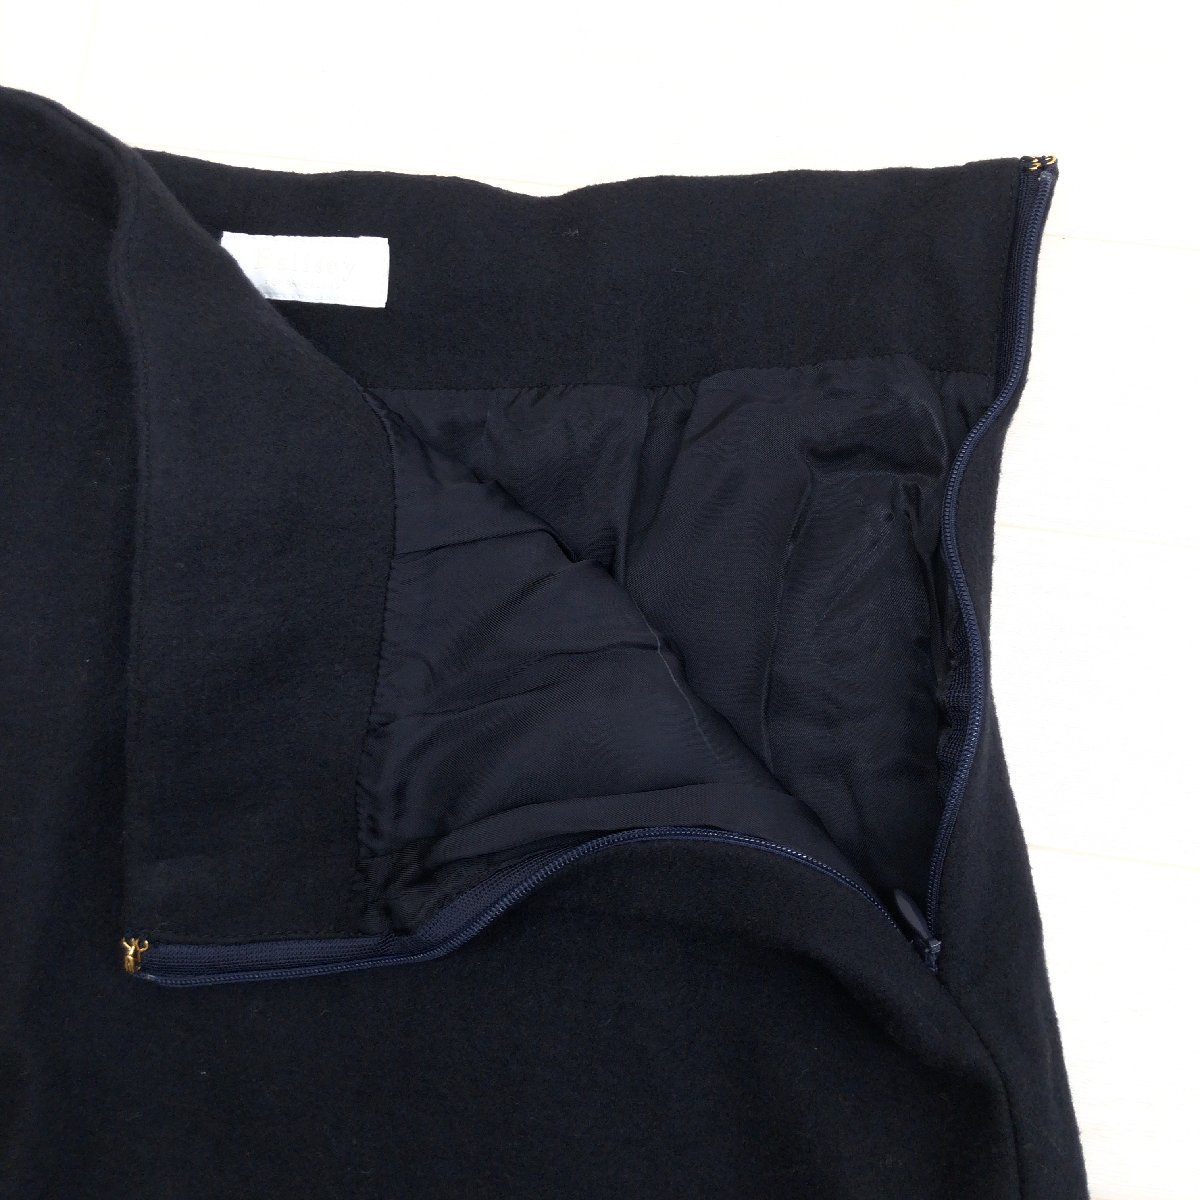 Ballsey ボールジィ ウール100% フレアスカート 40(L) w70 濃紺 ネイビー 日本製 ミモレ丈 国内正規品 レディース トゥモローランド_画像5